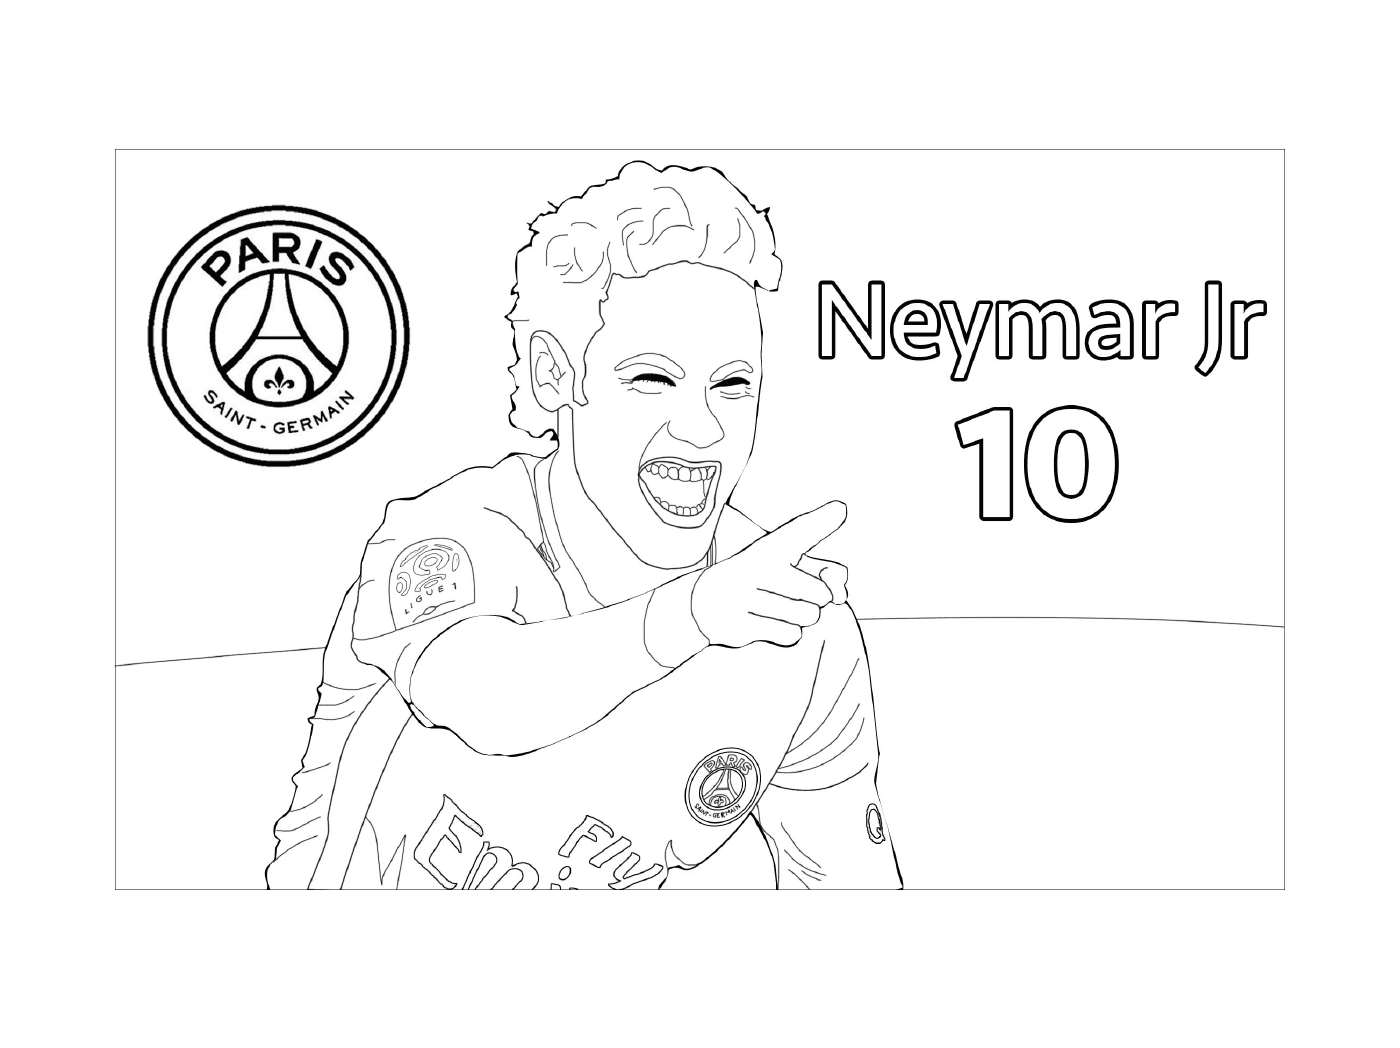  小Neymar Jr Neymar,PSG足球运动员 